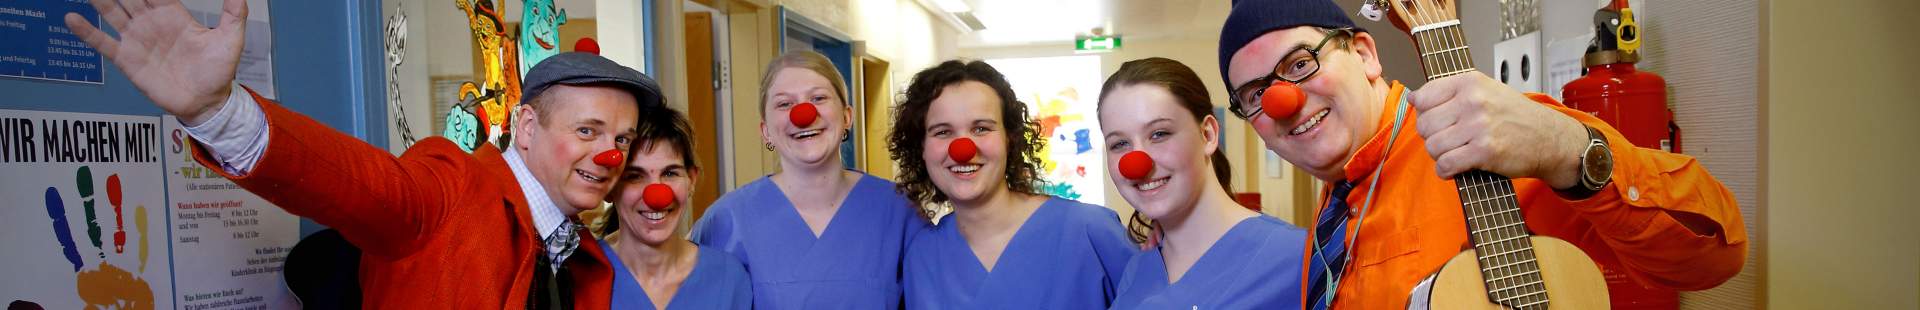 VRK Projekt Freude pflegen – Zwei HHH Clowns stehen mit Pflegekräften, die rote Clownsnasen auf haben, in einer Einrichtung.